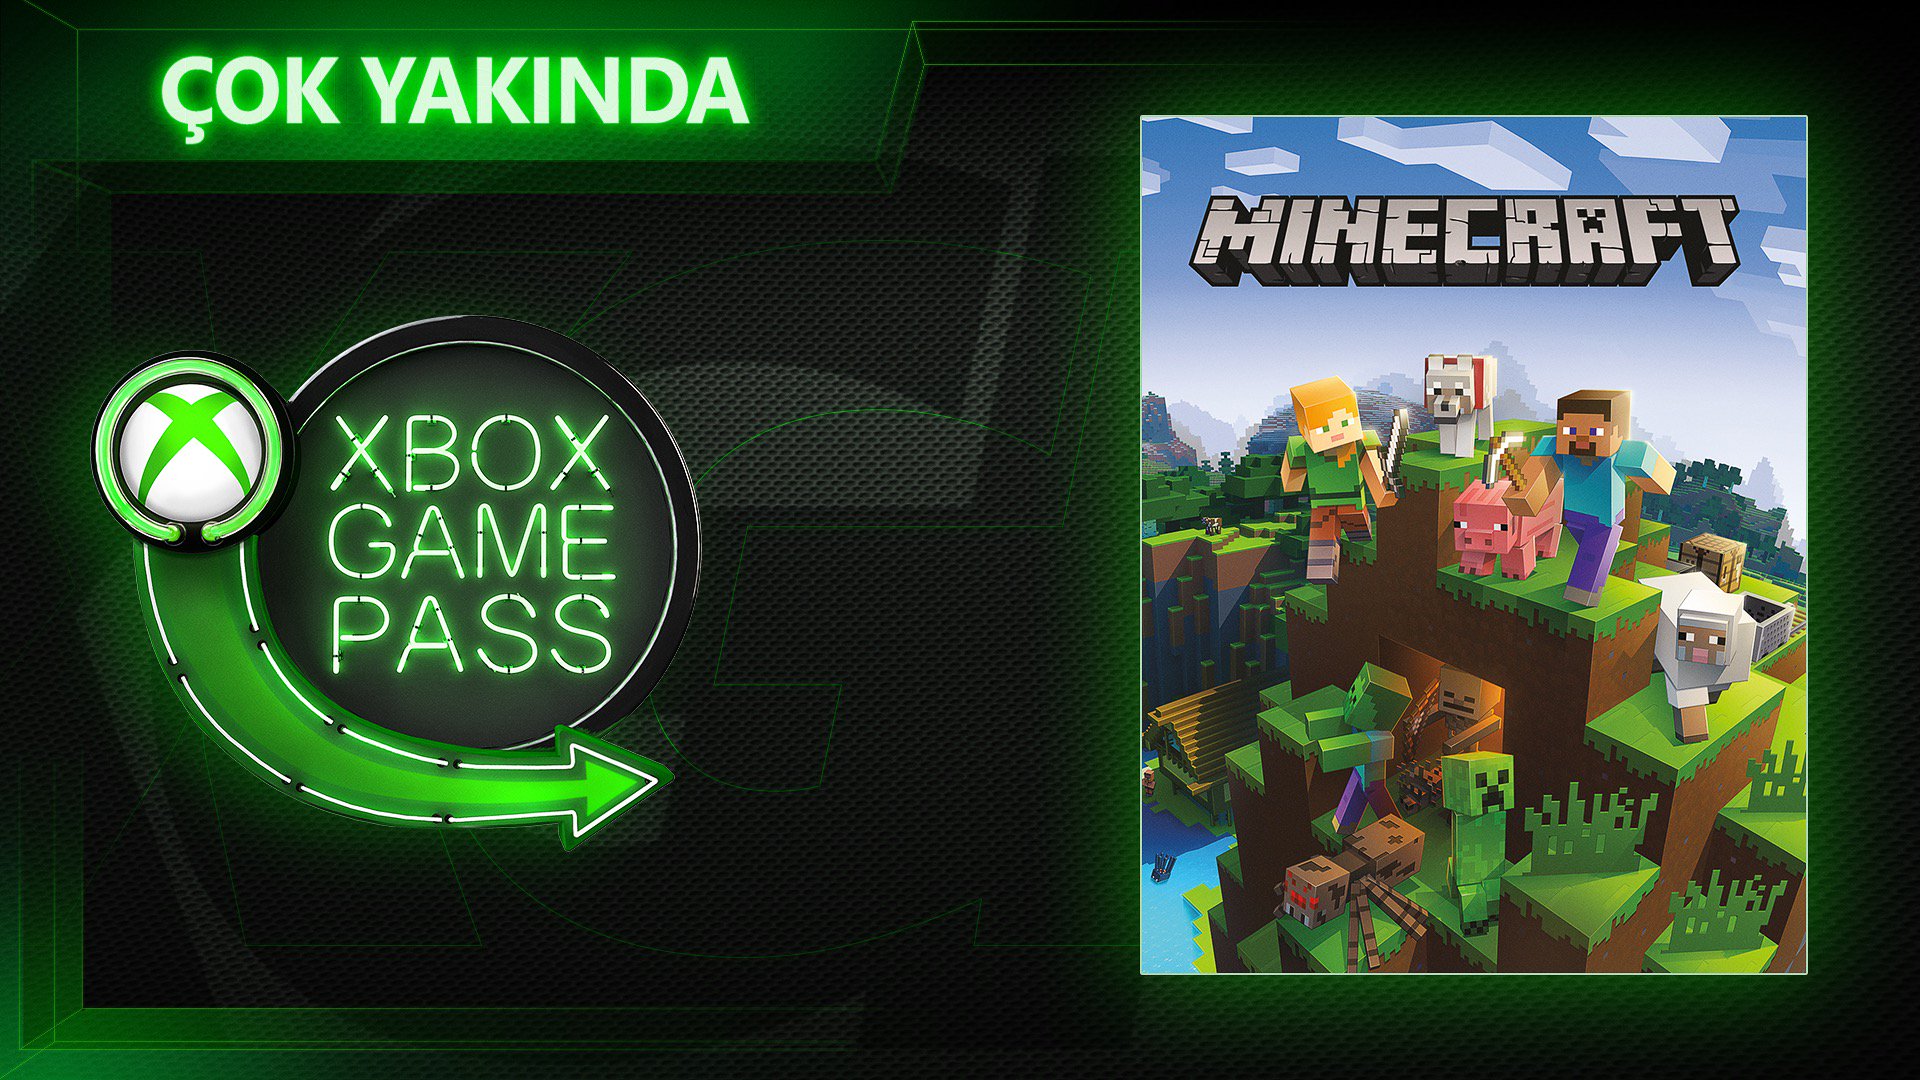 Игры xbox minecraft. Xbox game Pass. Майнкрафт хбокс гейм пасс. Xbox game Pass майнкрафт. Coming soon игра.